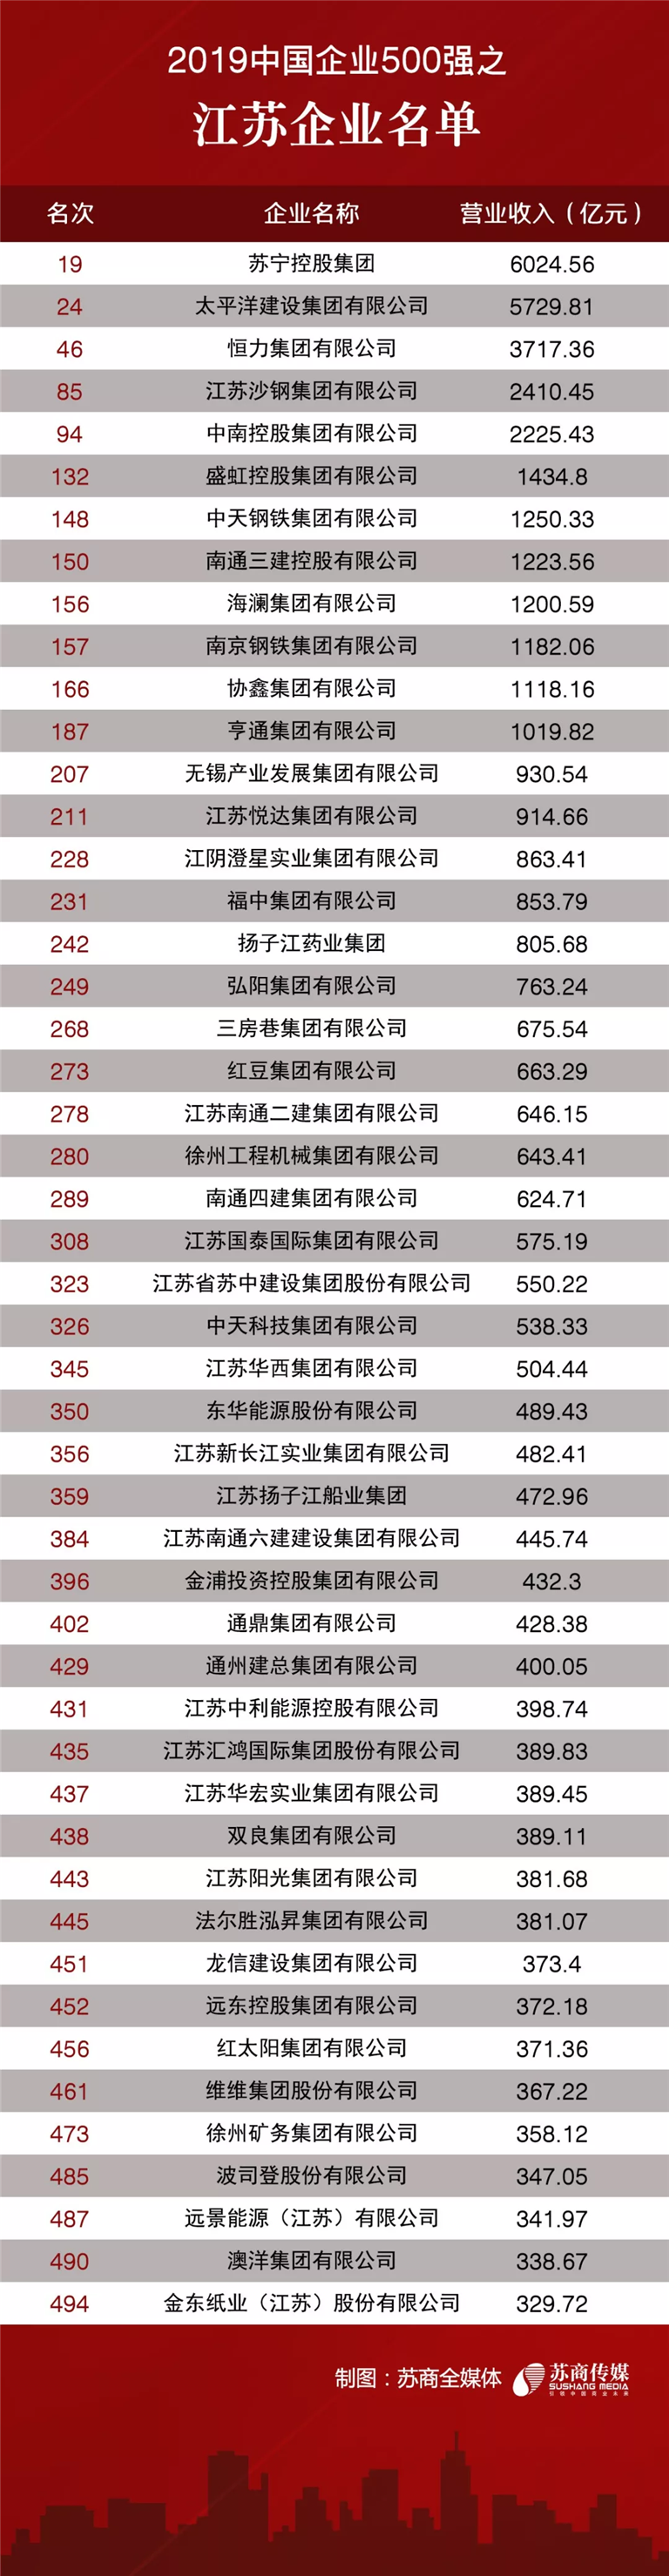 2019中国企业500强之江苏企业名单